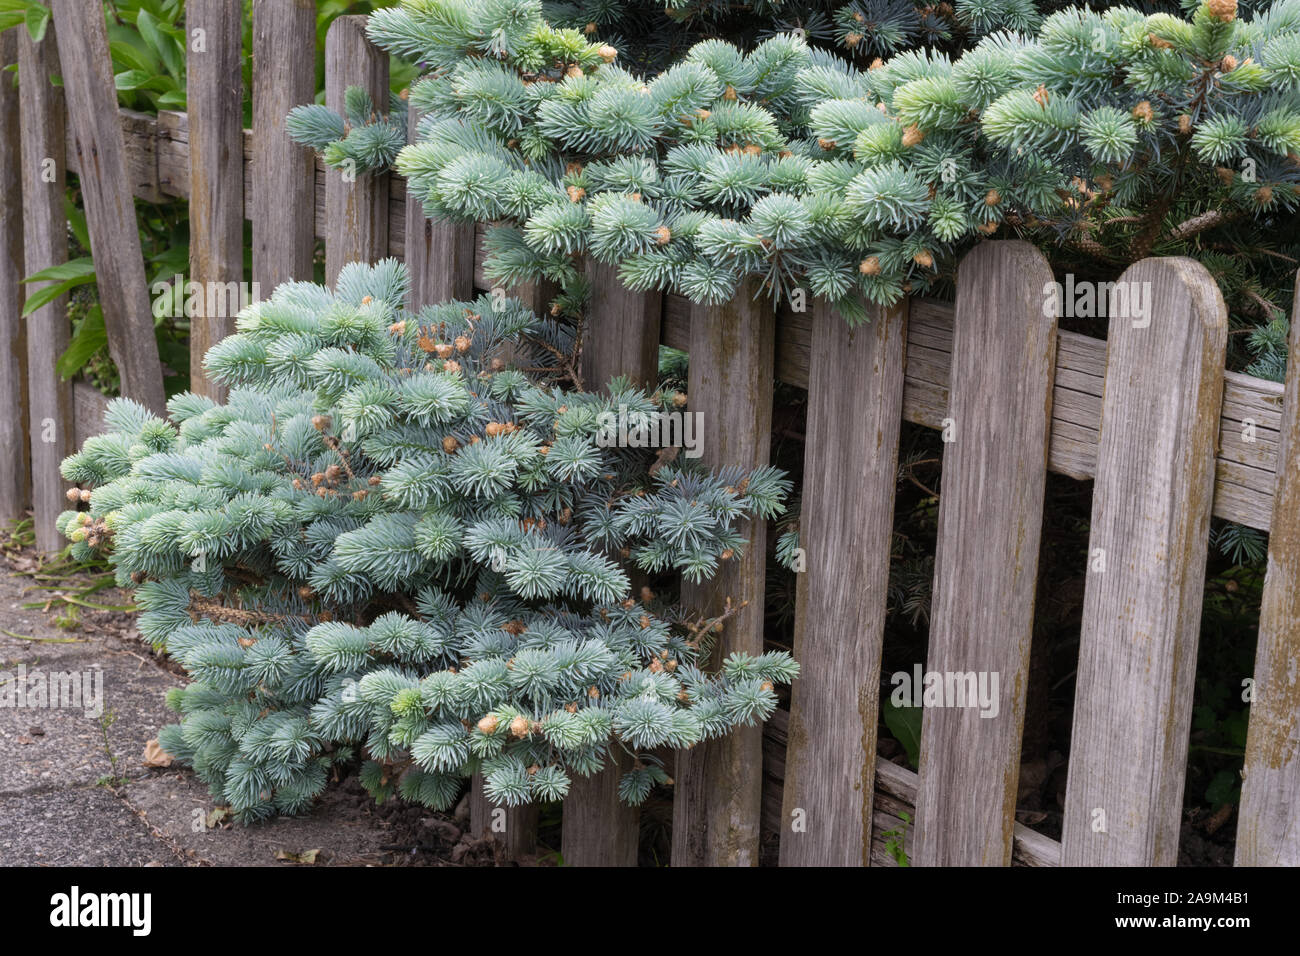 Picea pungens 'Hastata Prostrata" (Verbreitung oder schleichende Zwerg Colorado spruce) zunehmend durch einen Holzzaun in einem städtischen Garten. Schöne silber Blu Stockfoto